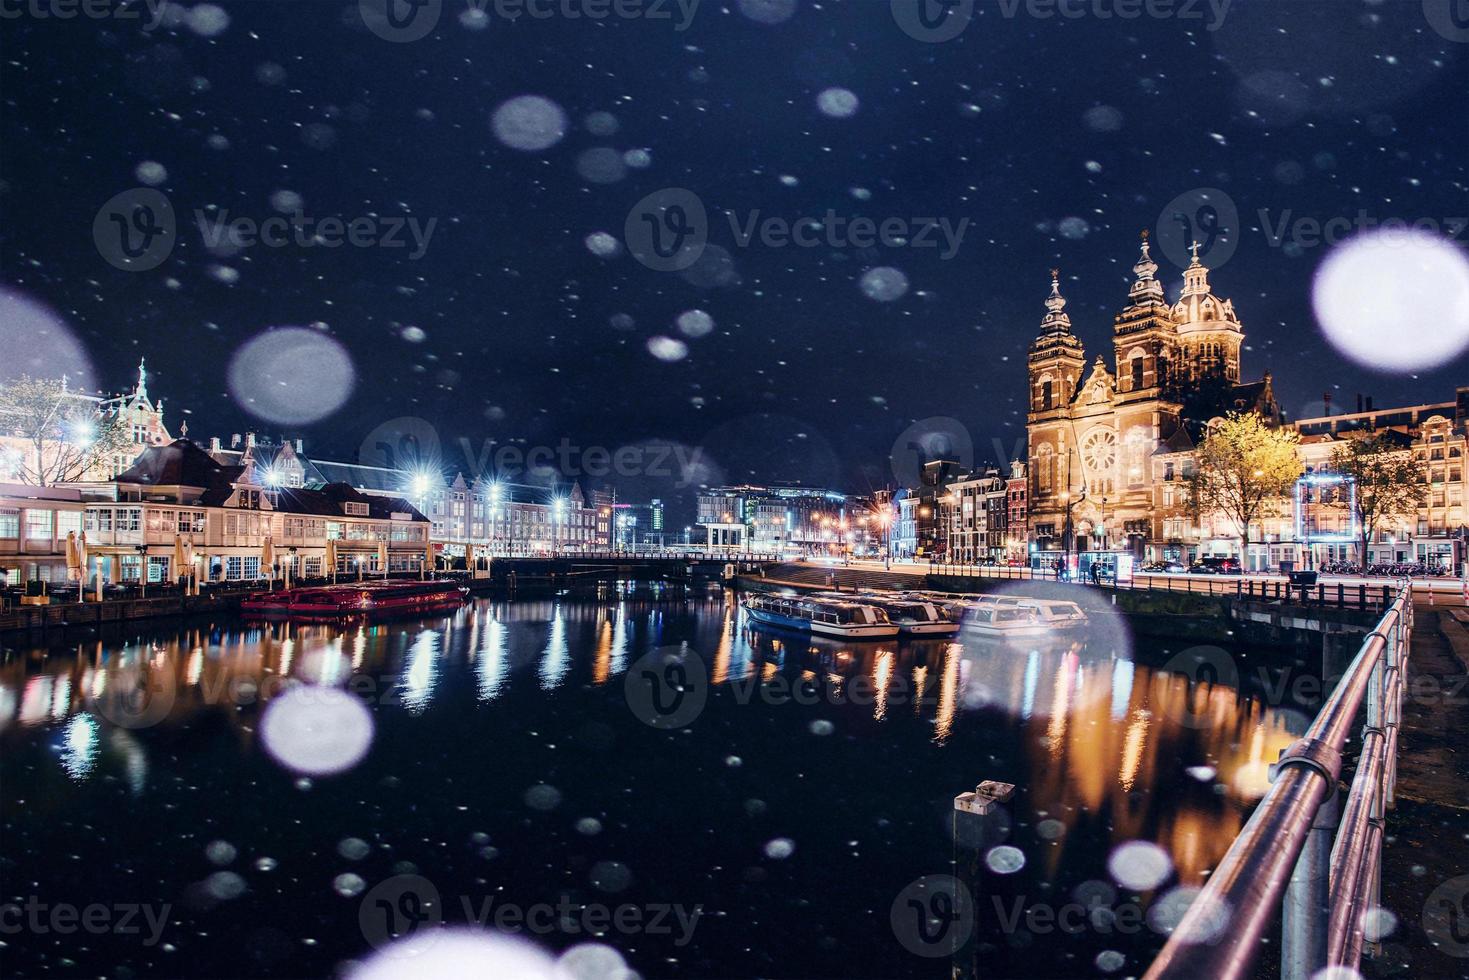 hermosa noche en amsterdam. iluminación nocturna de edificios y barcos cerca del agua en el canal durante una tormenta de nieve. efecto de luz bokeh, filtro suave foto